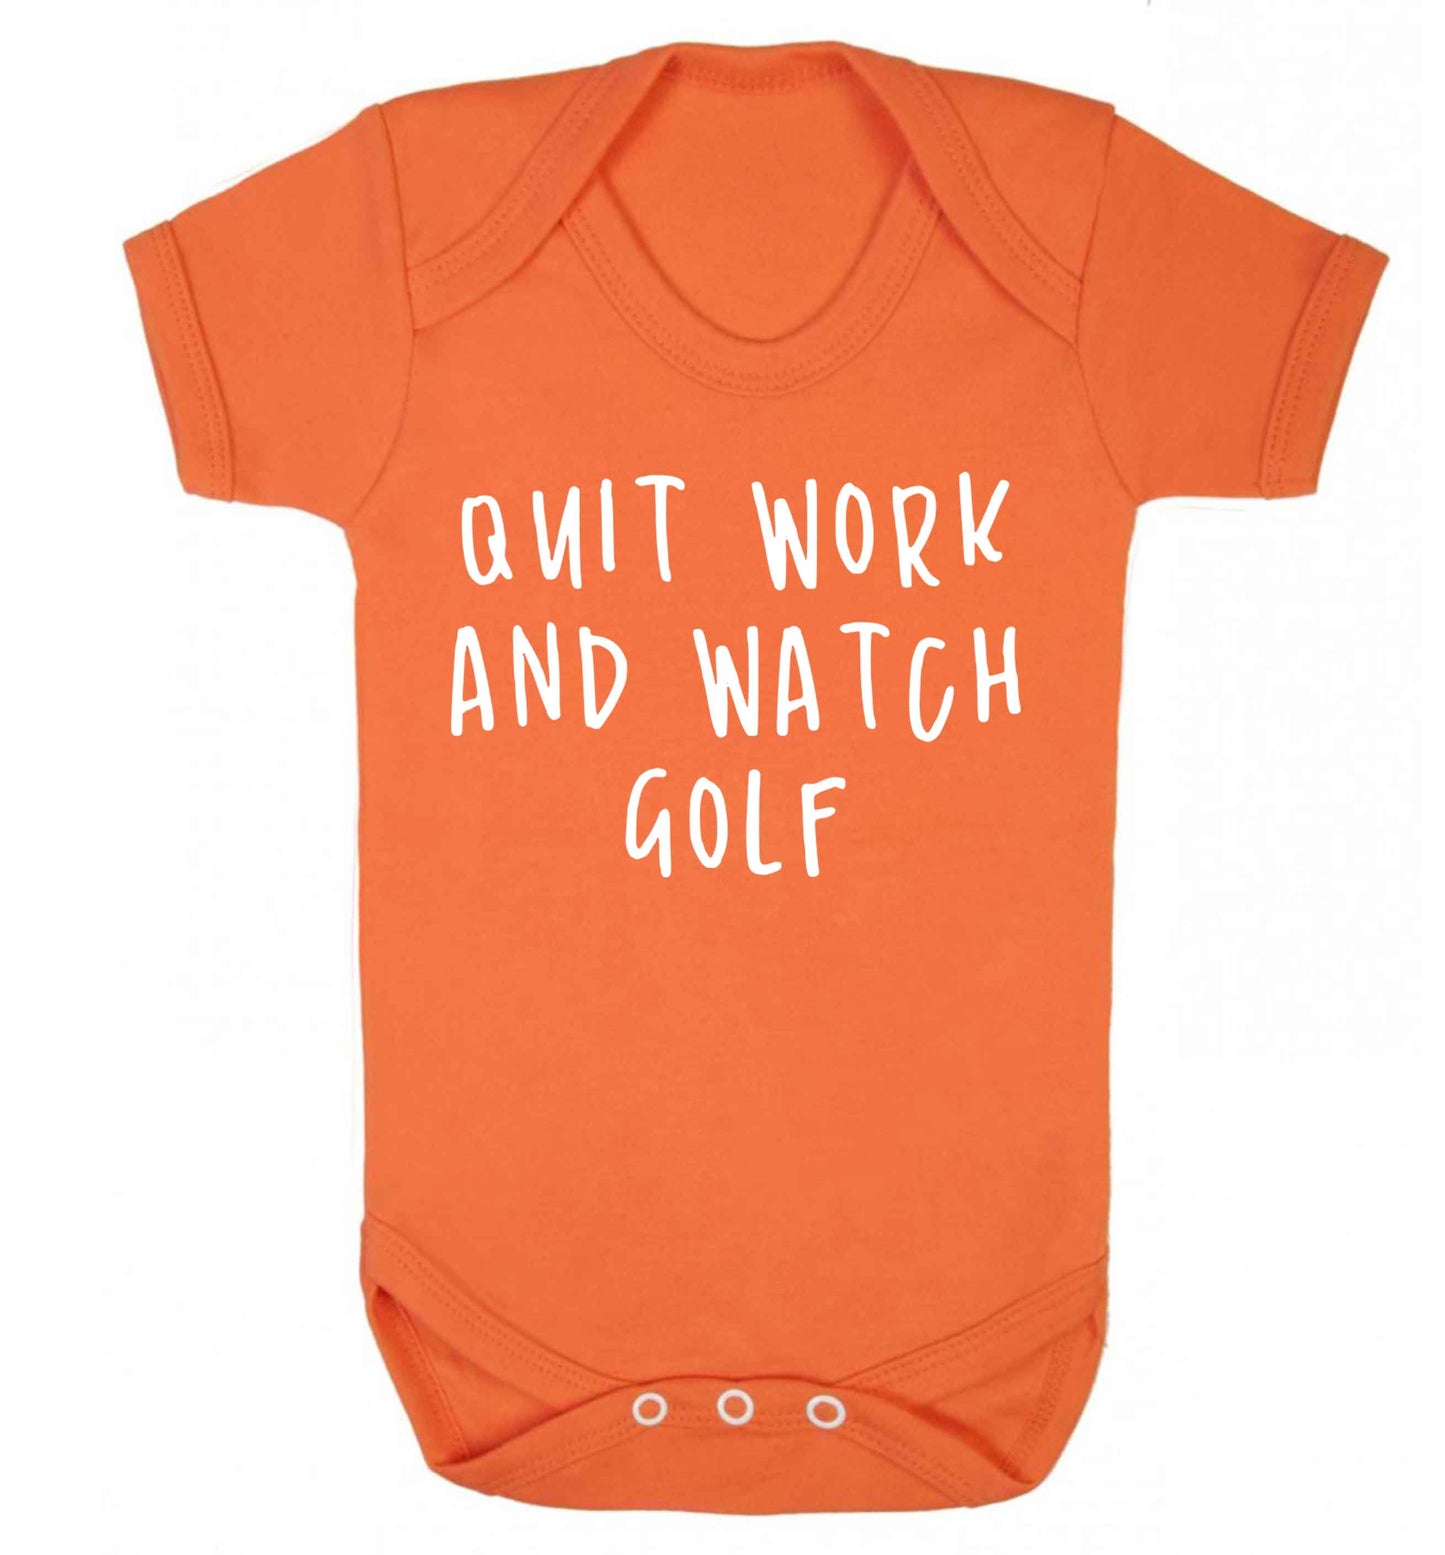 Quit work and watch golf Baby Vest orange 18-24 months